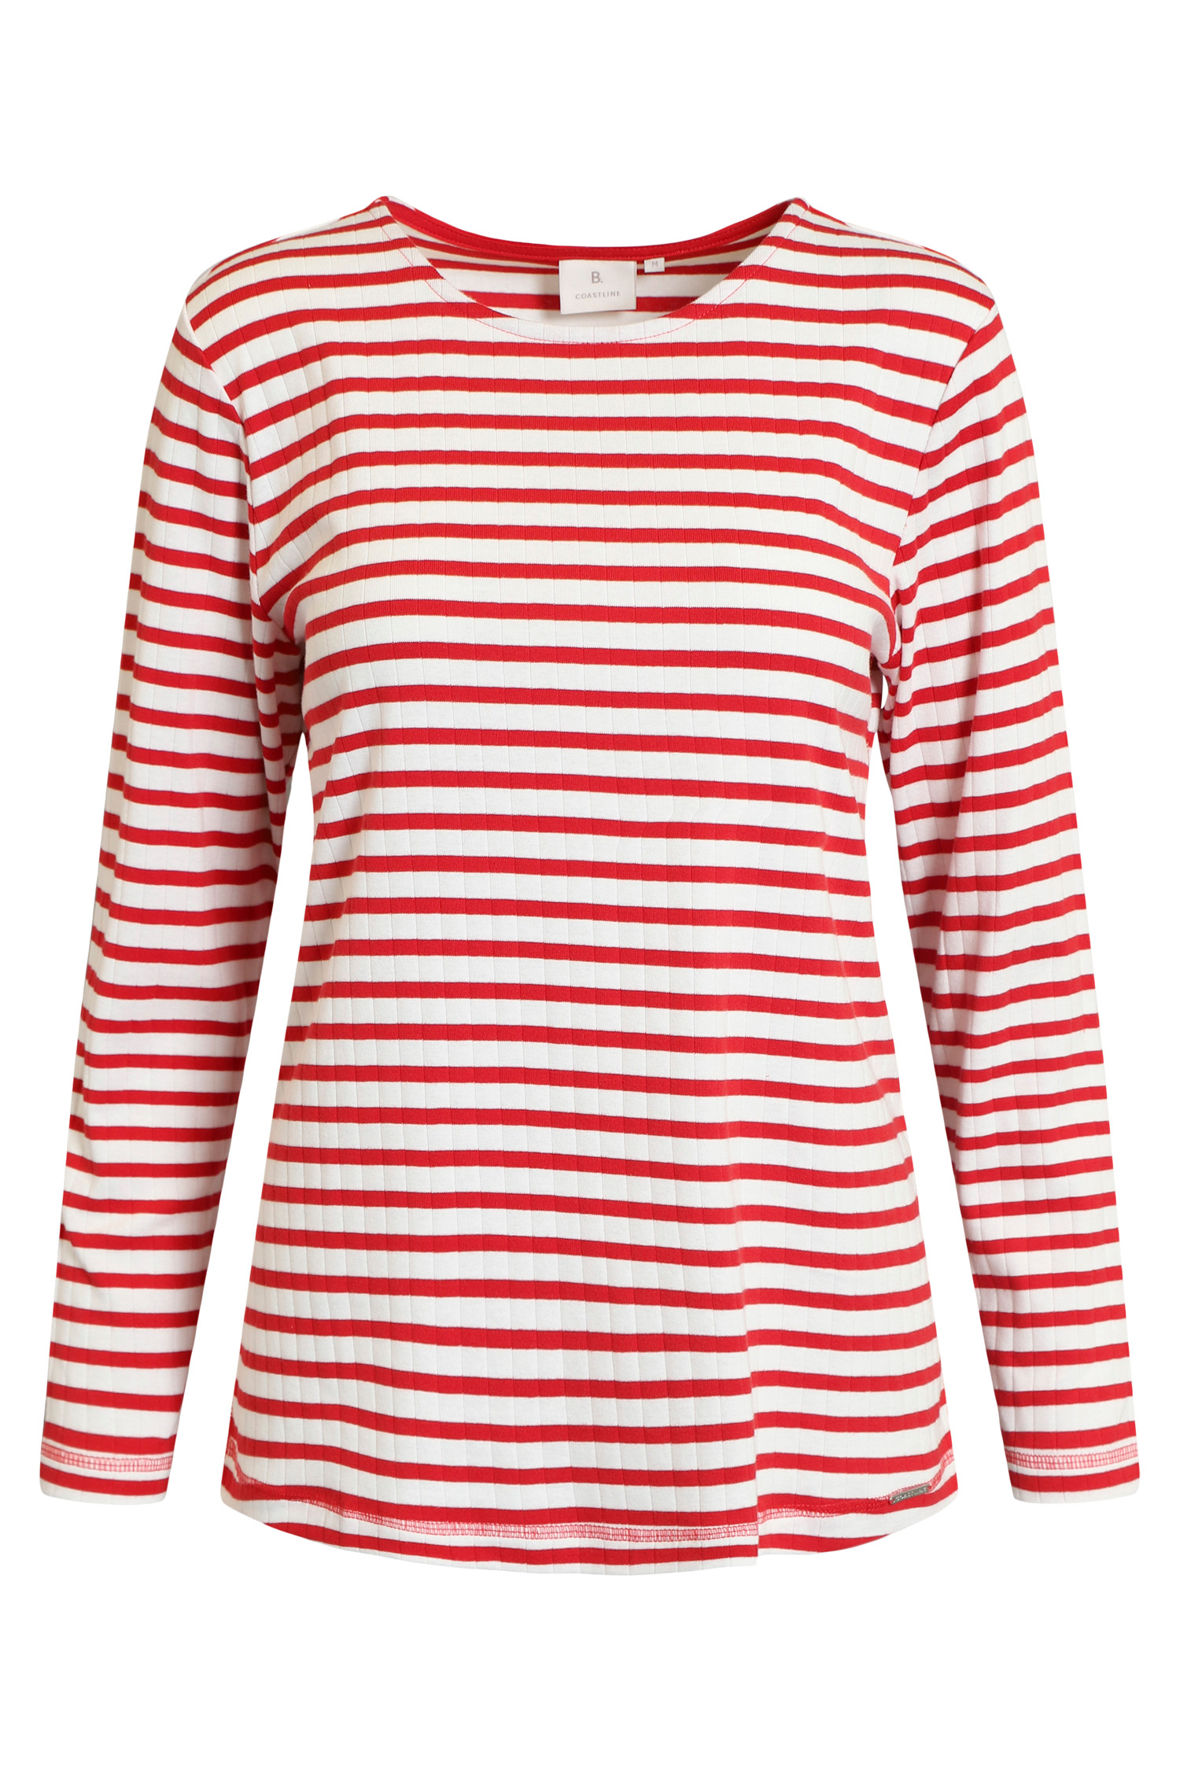 B. Coastline stribet casual t-shirt i rød og off white - Hos Lohse